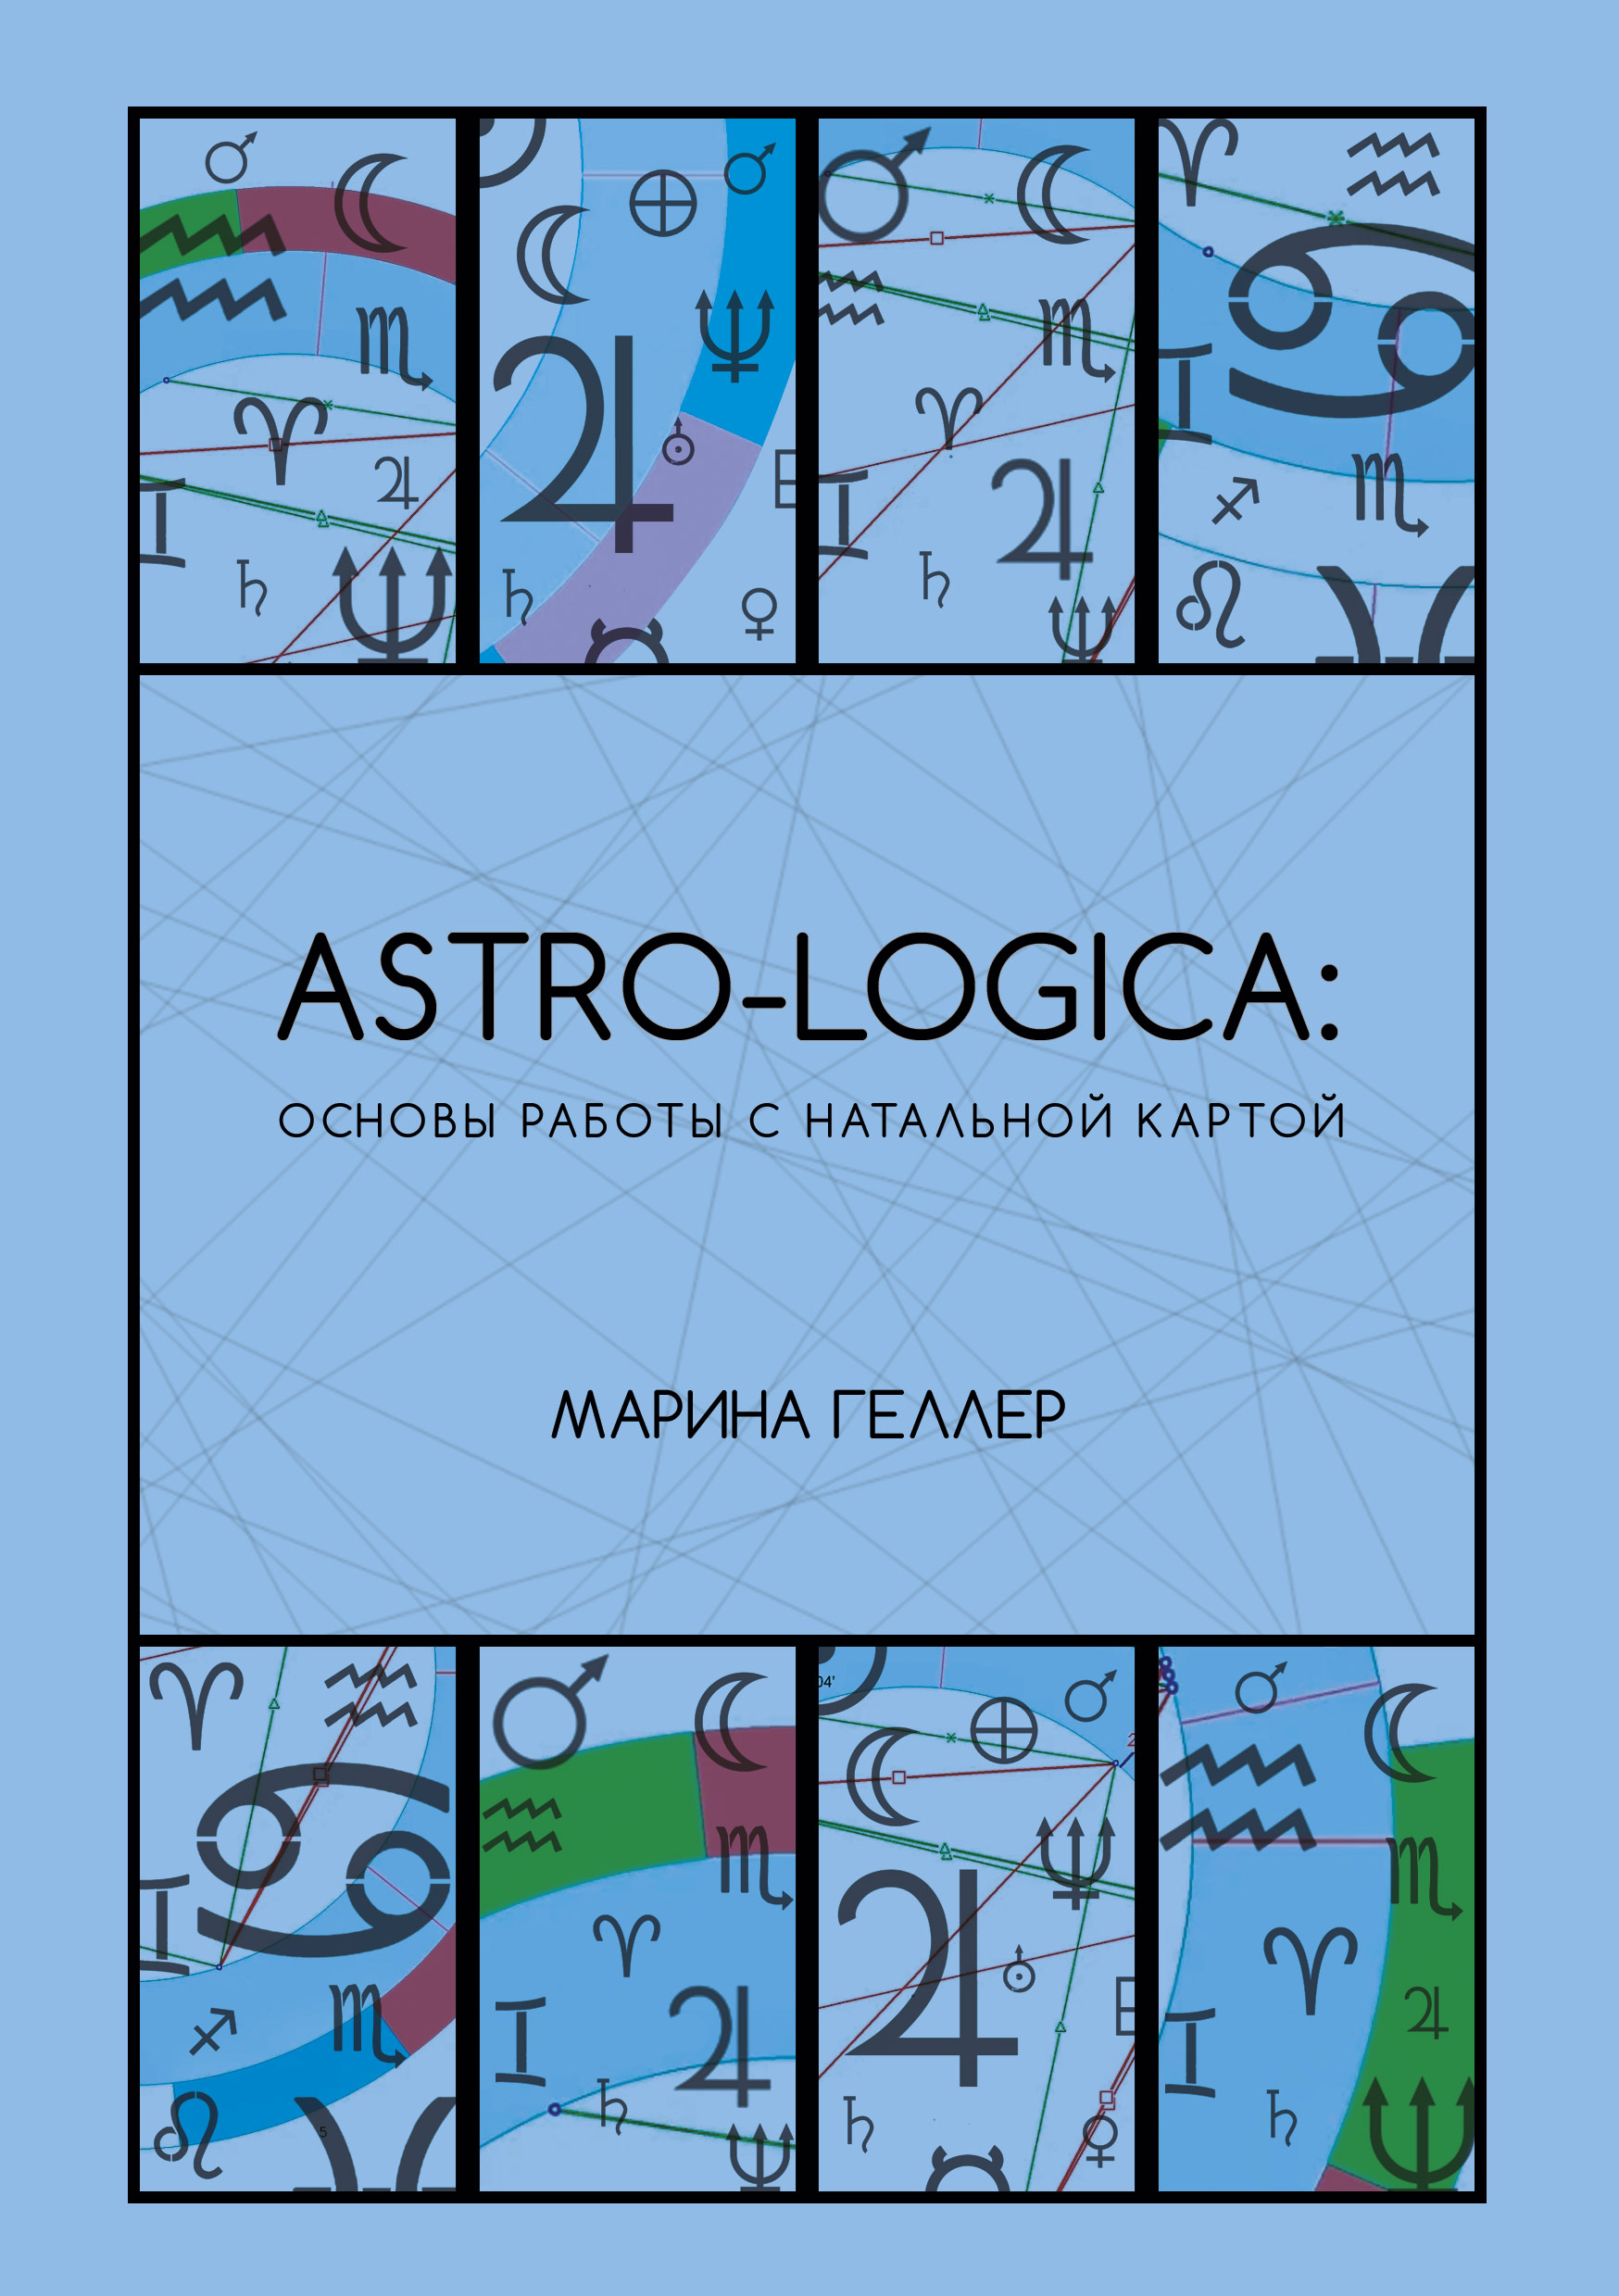 Astro-logica: основы работы с натальной картой %% обложка